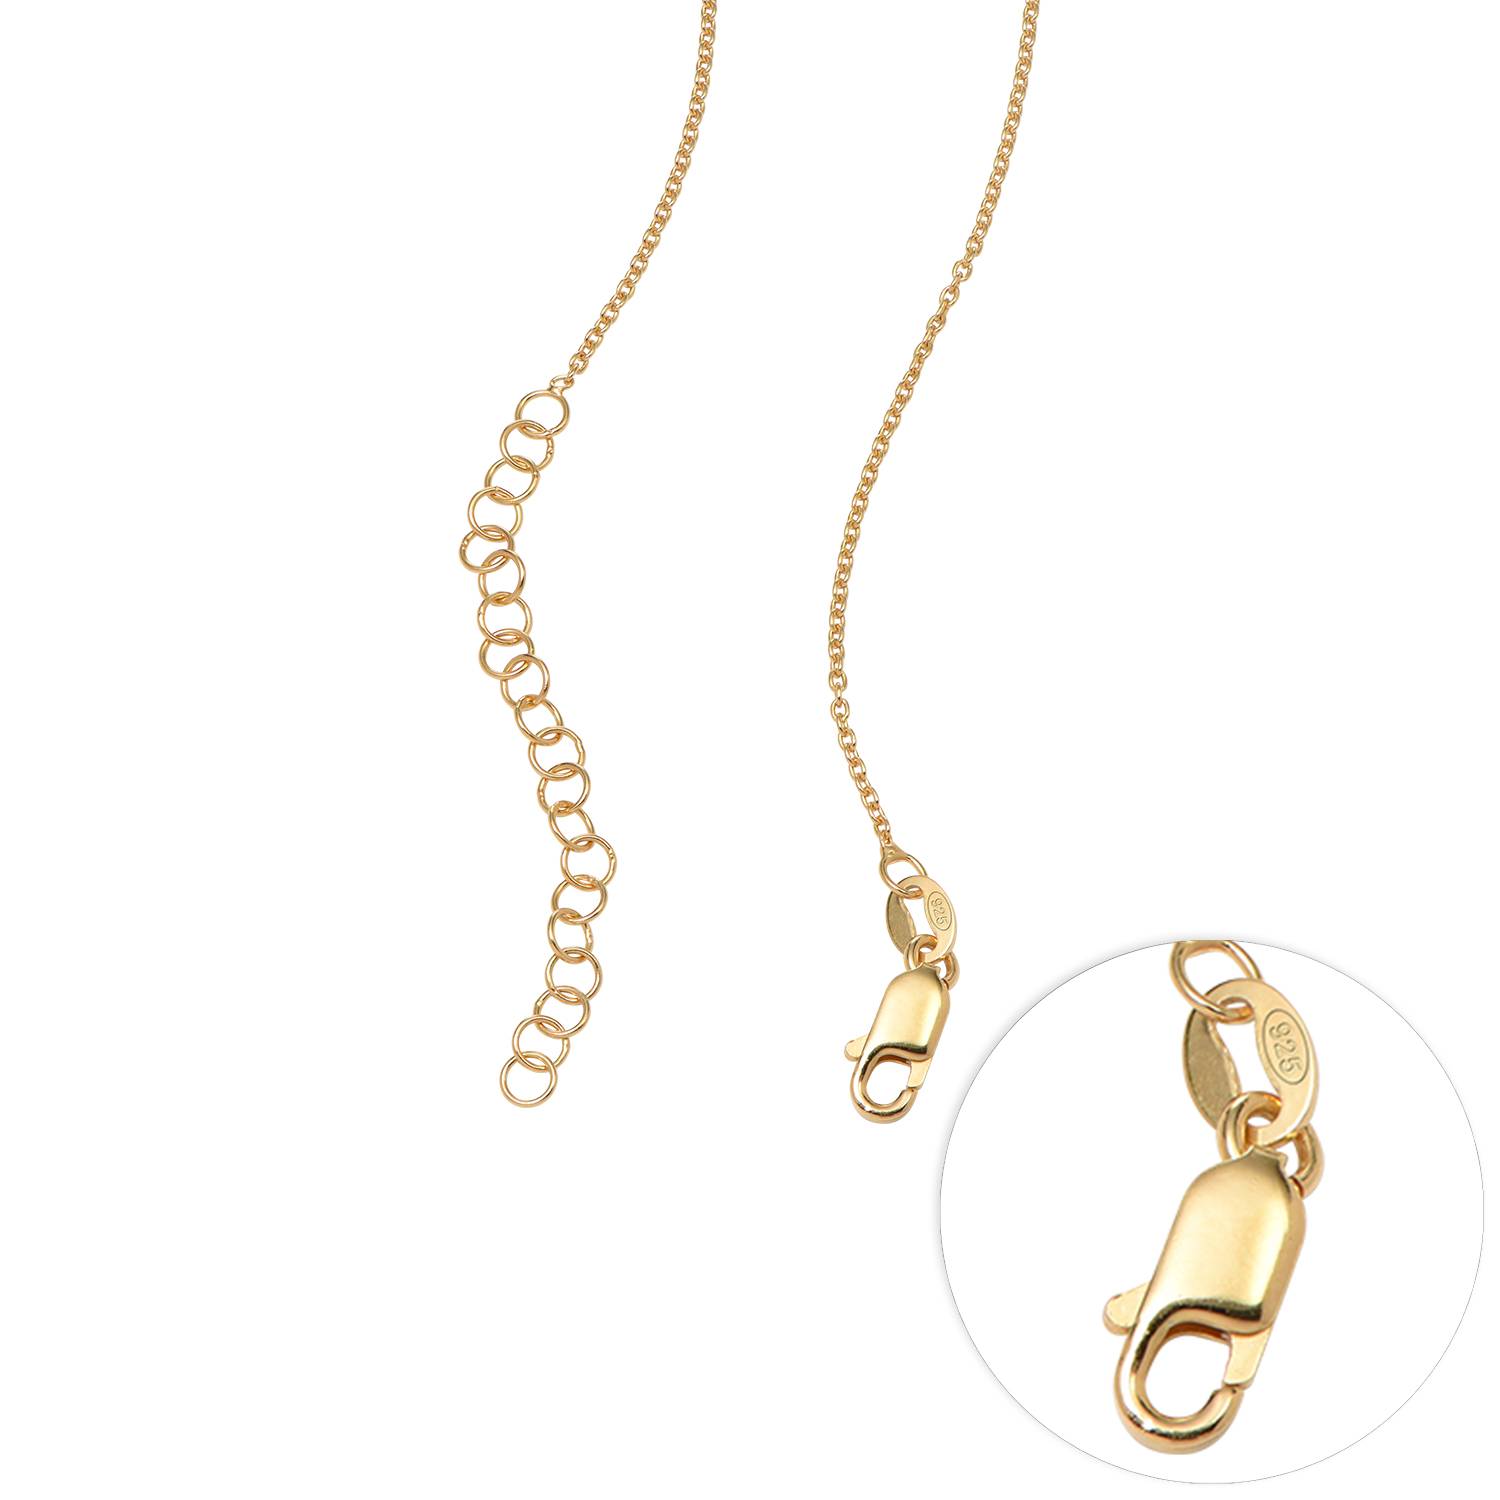 Blandede metaller balance charme halskæde med 18K guldbelægning kæde-1 produkt billede